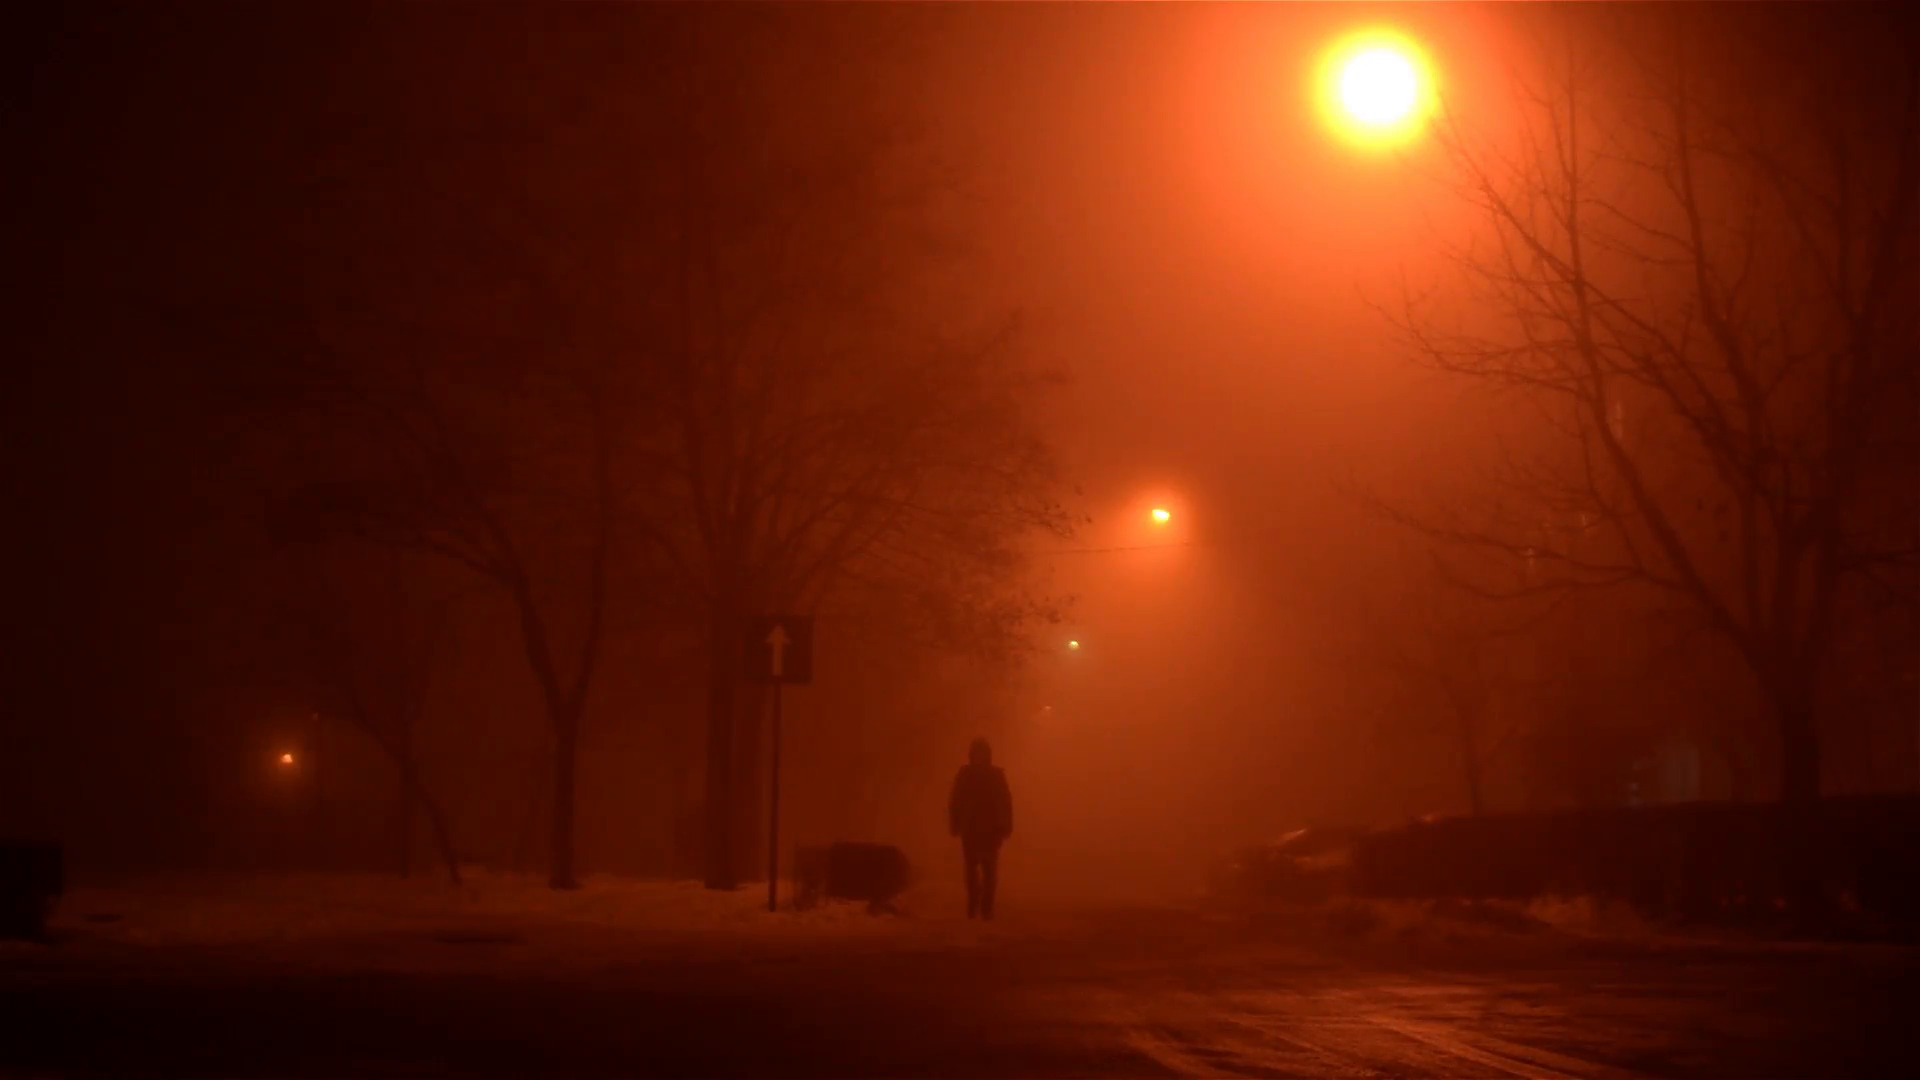 Lone person walks on a snowy street in an orange haze night, in a ...